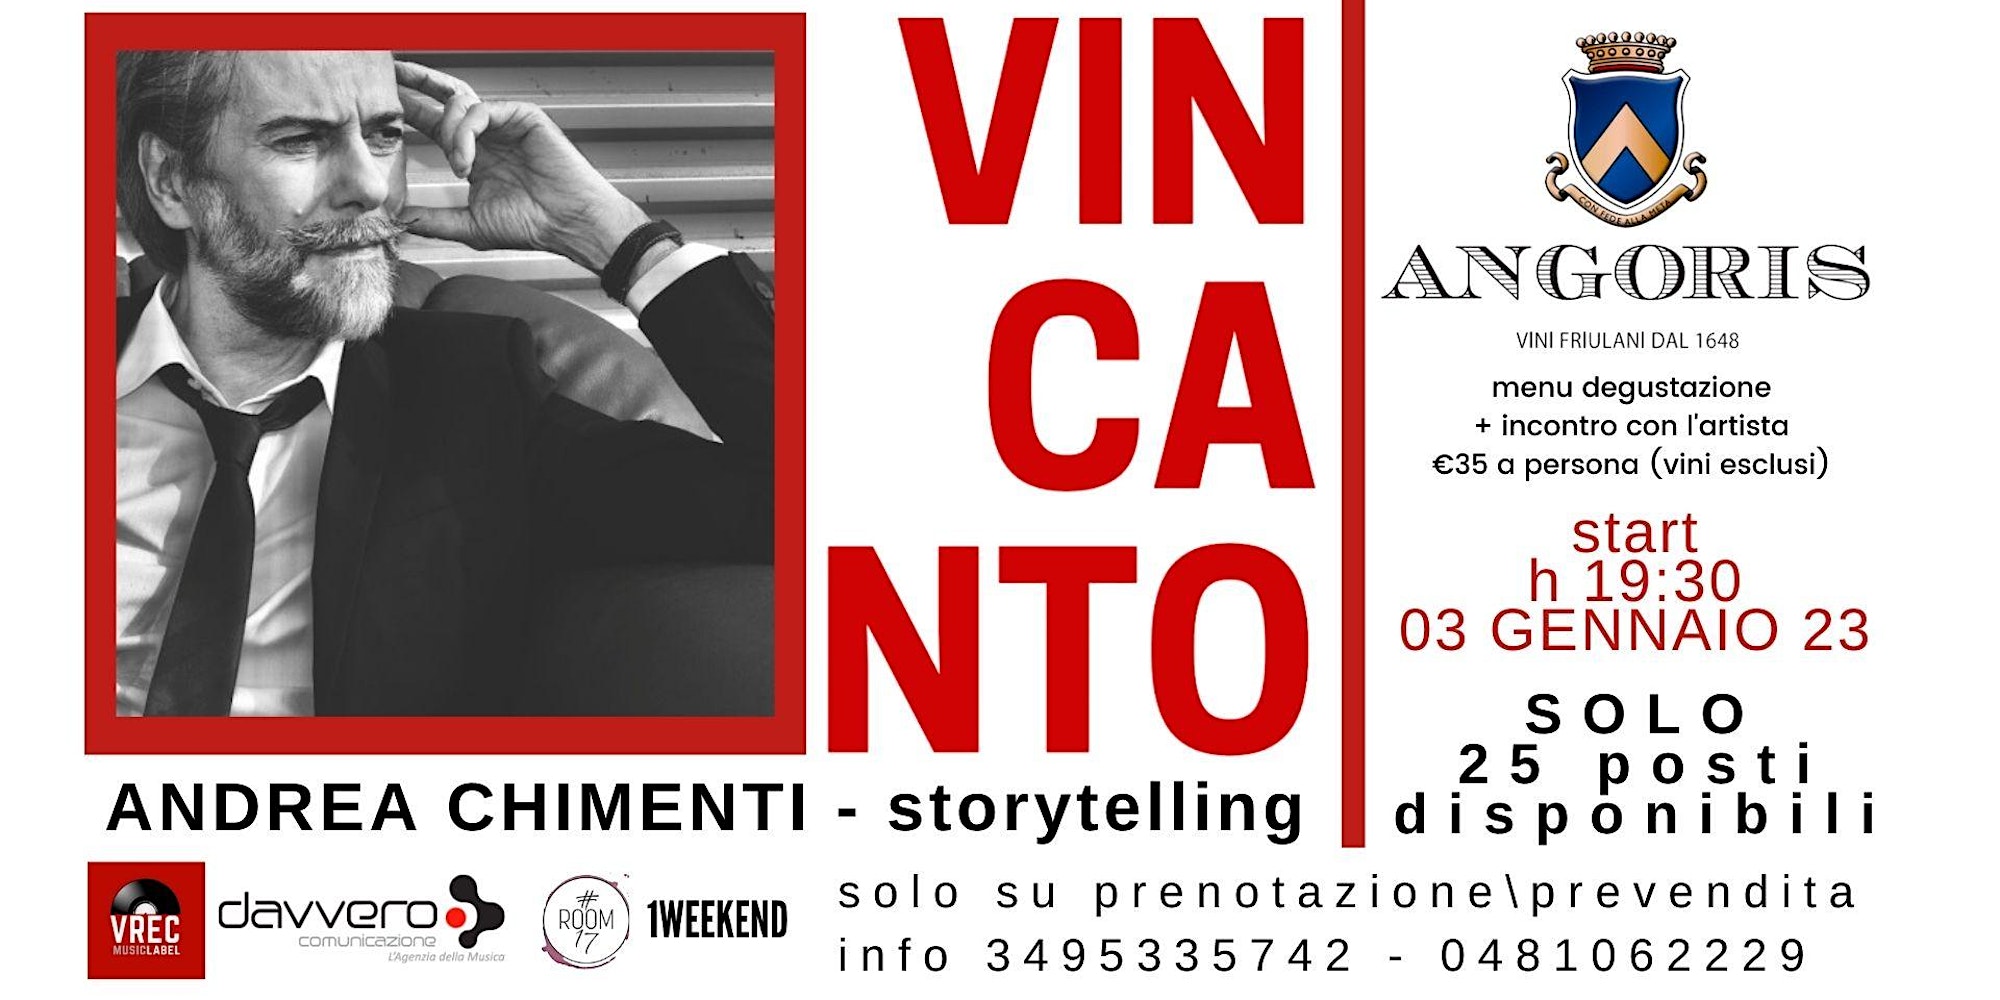 ANDREA CHIMENTI - Storytelling - VinCanto al podere di Angoris - Cormons